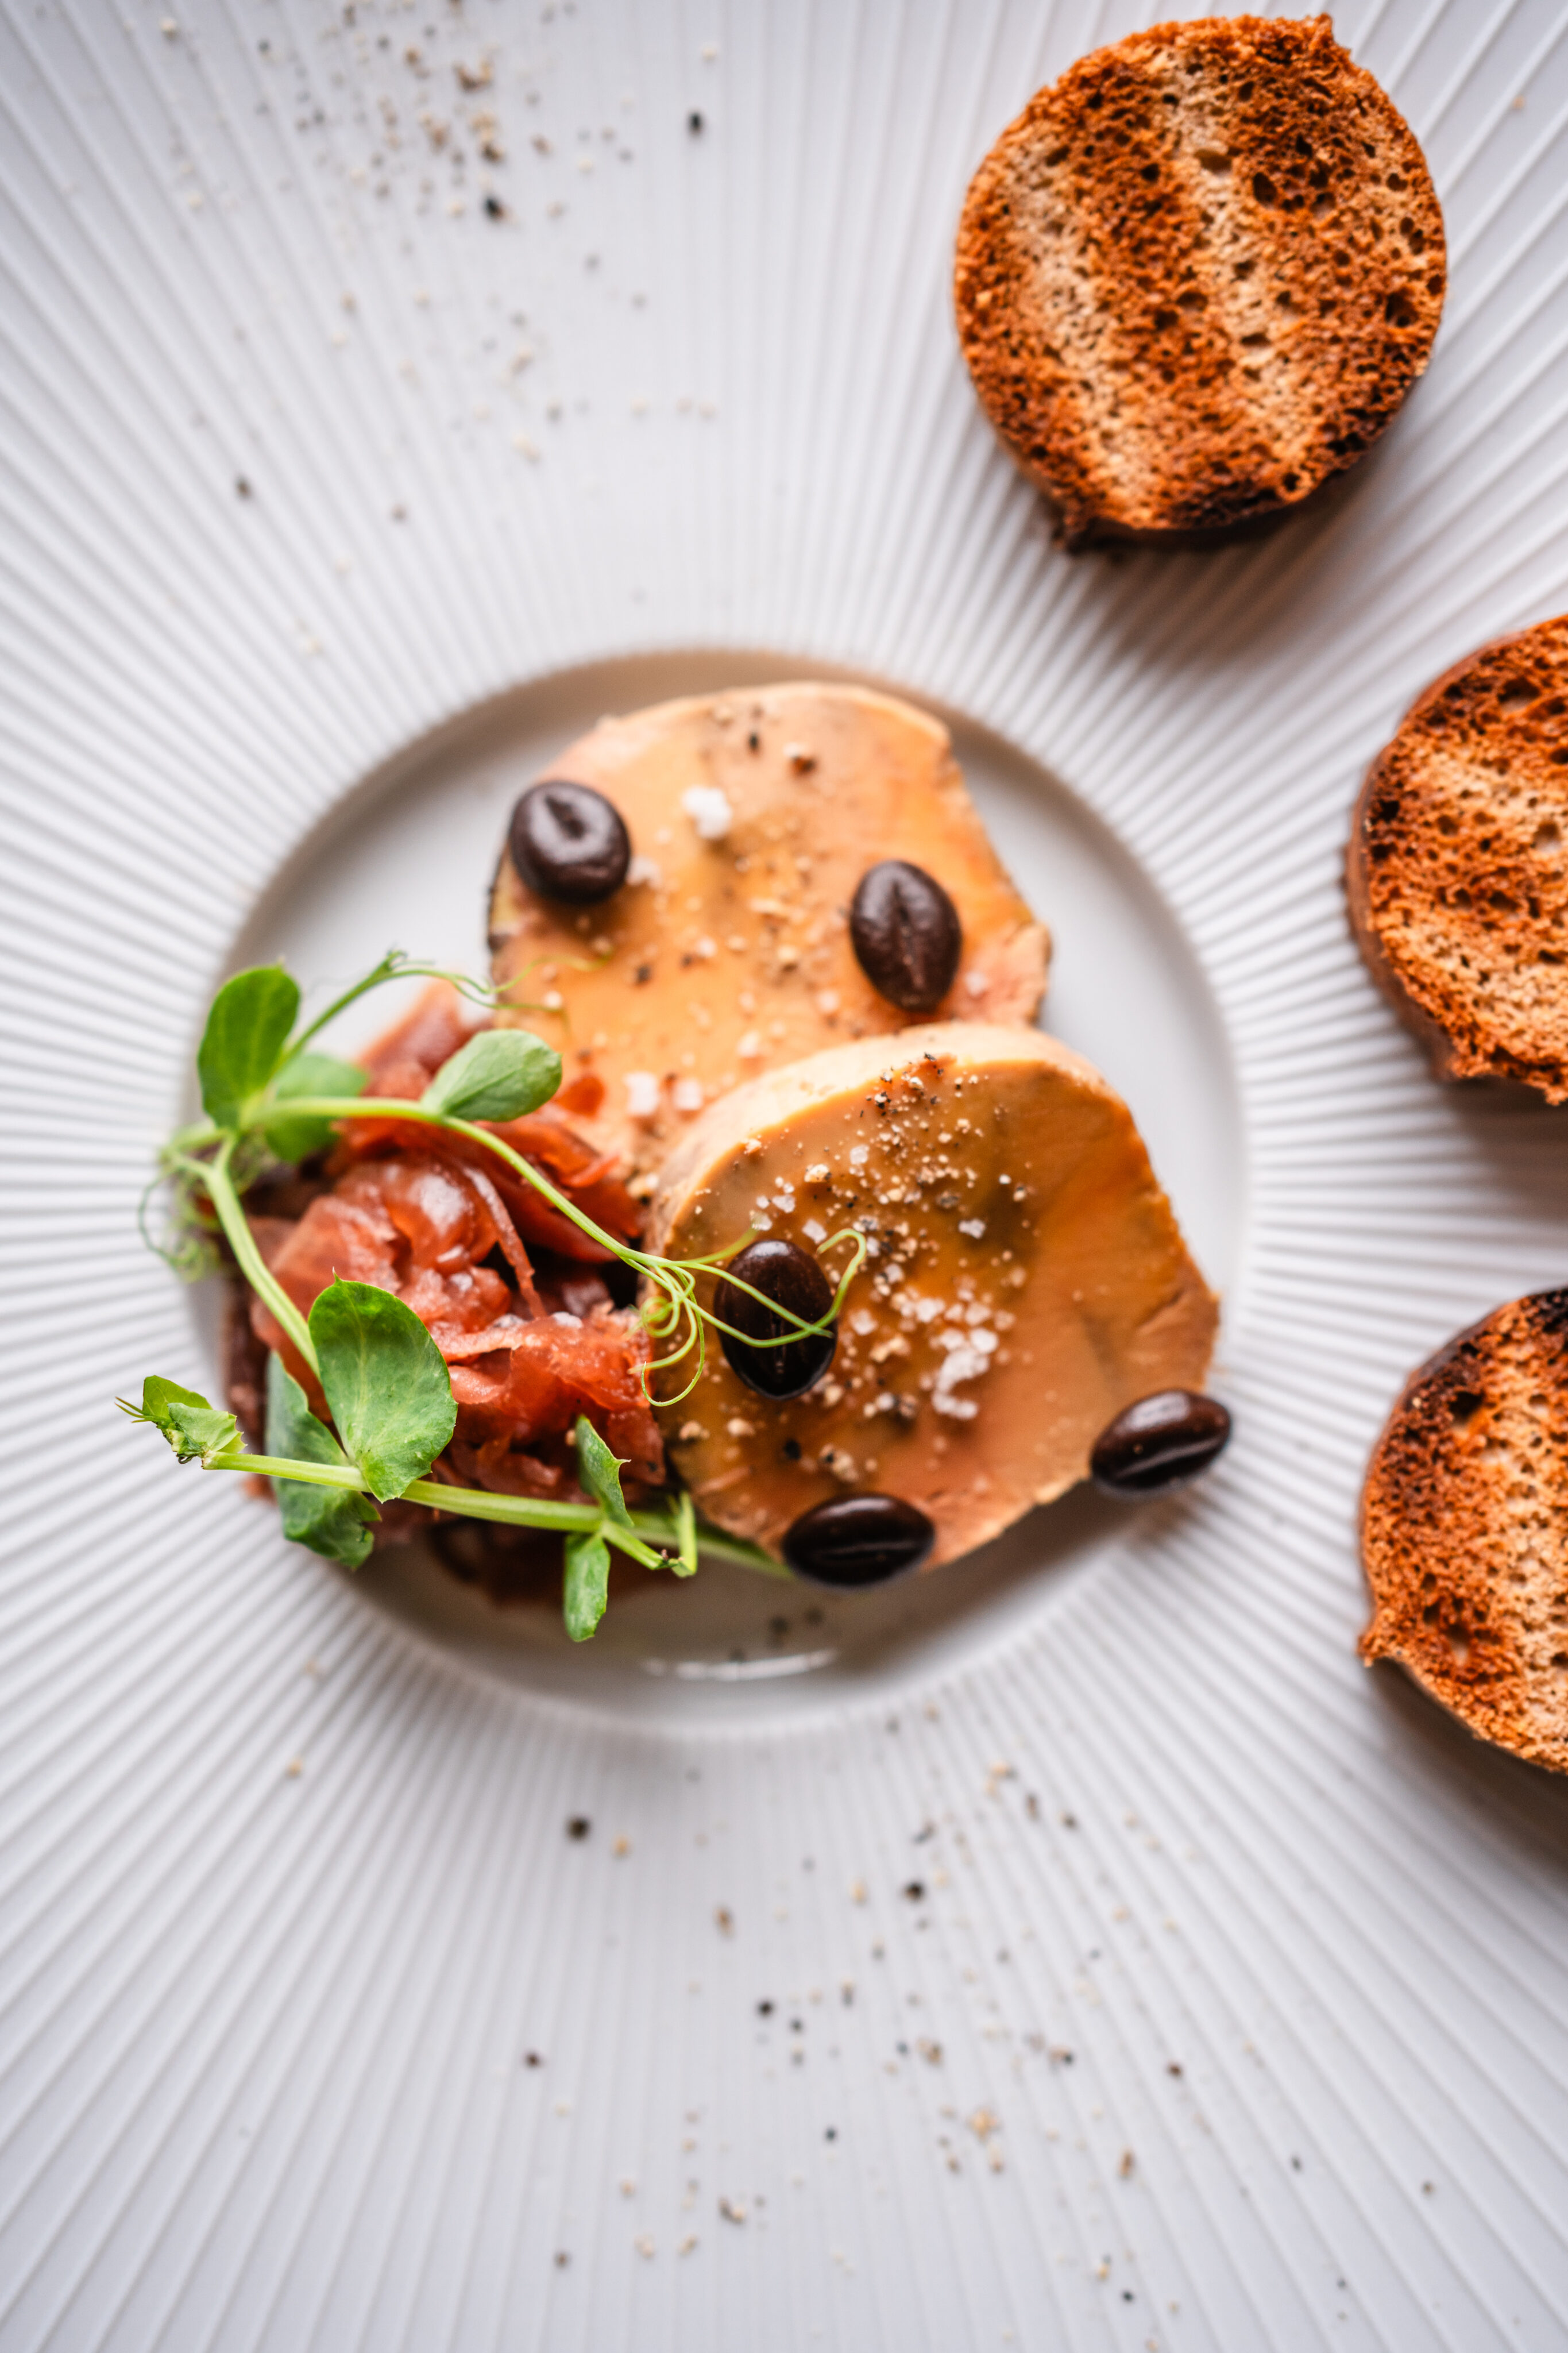 Panier foie gras - Le Panier Limousin